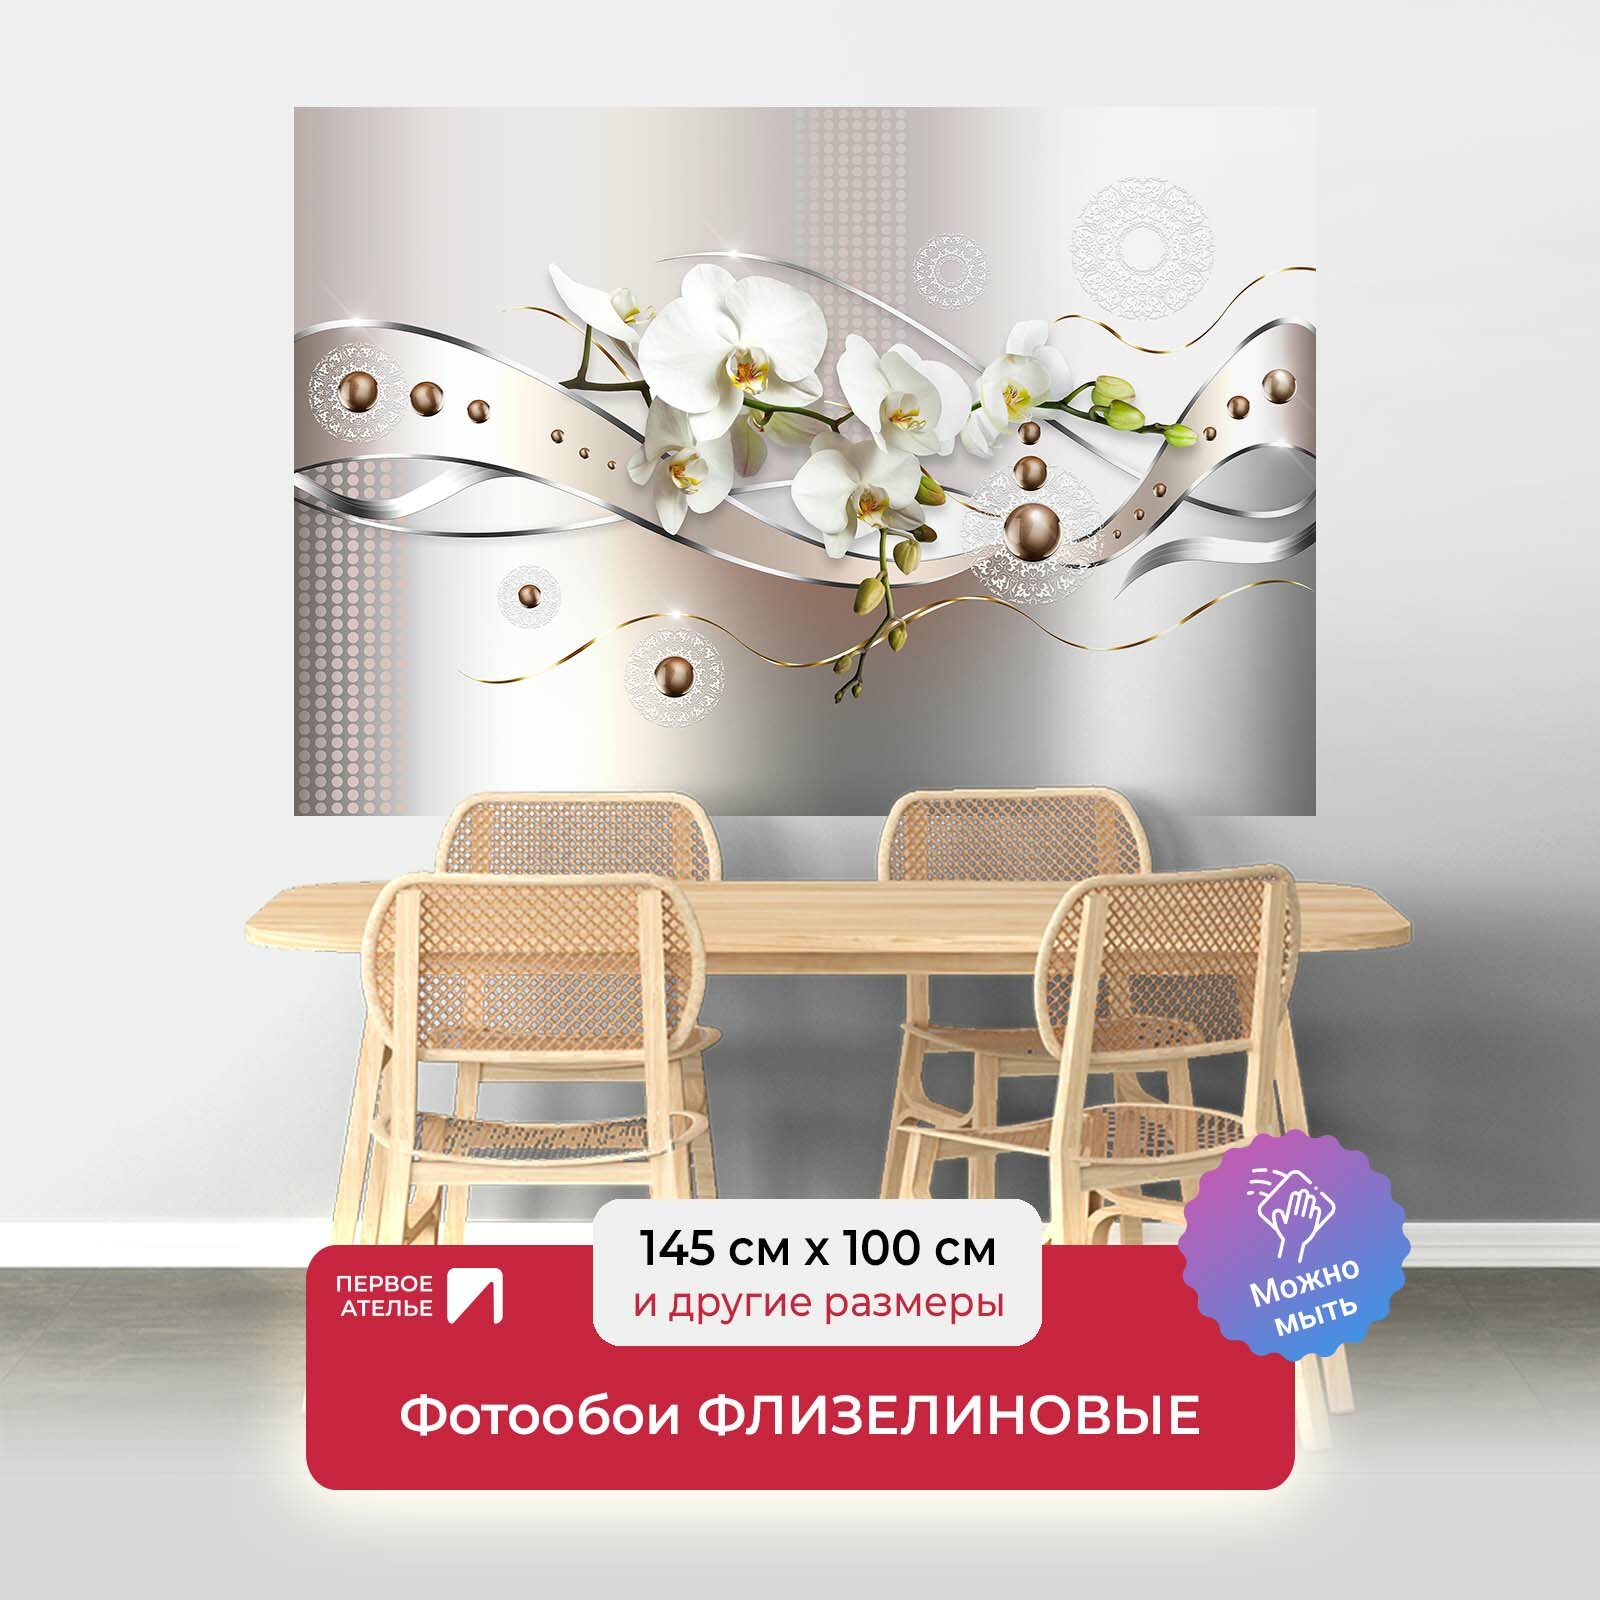 Фотообои на стену первое ателье "Металлические ленты с орхидеями" 145х100 см (ШхВ), флизелиновые Premium